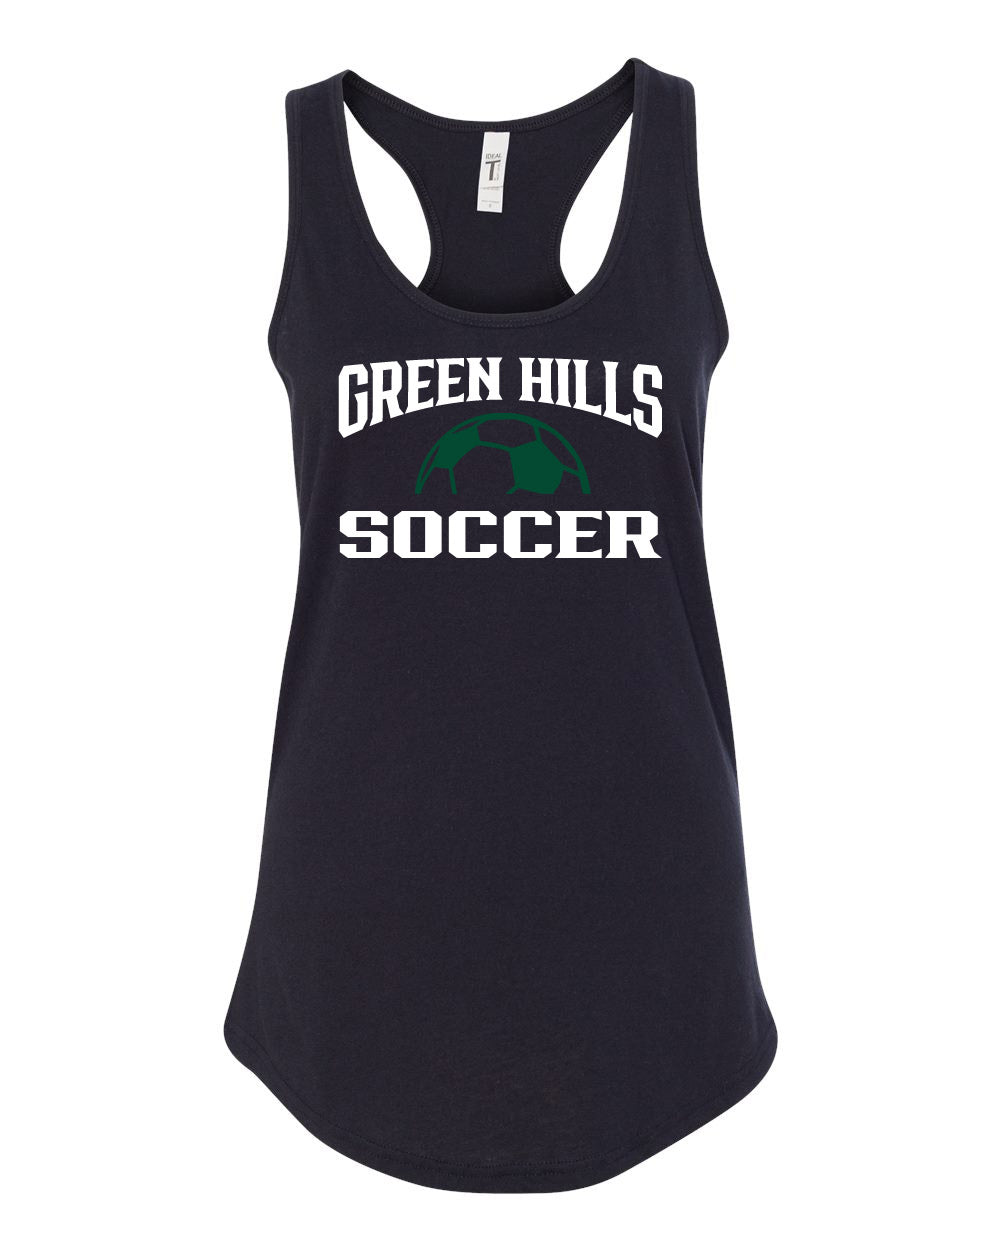 Green Hills Soccer design 1 Tank Top